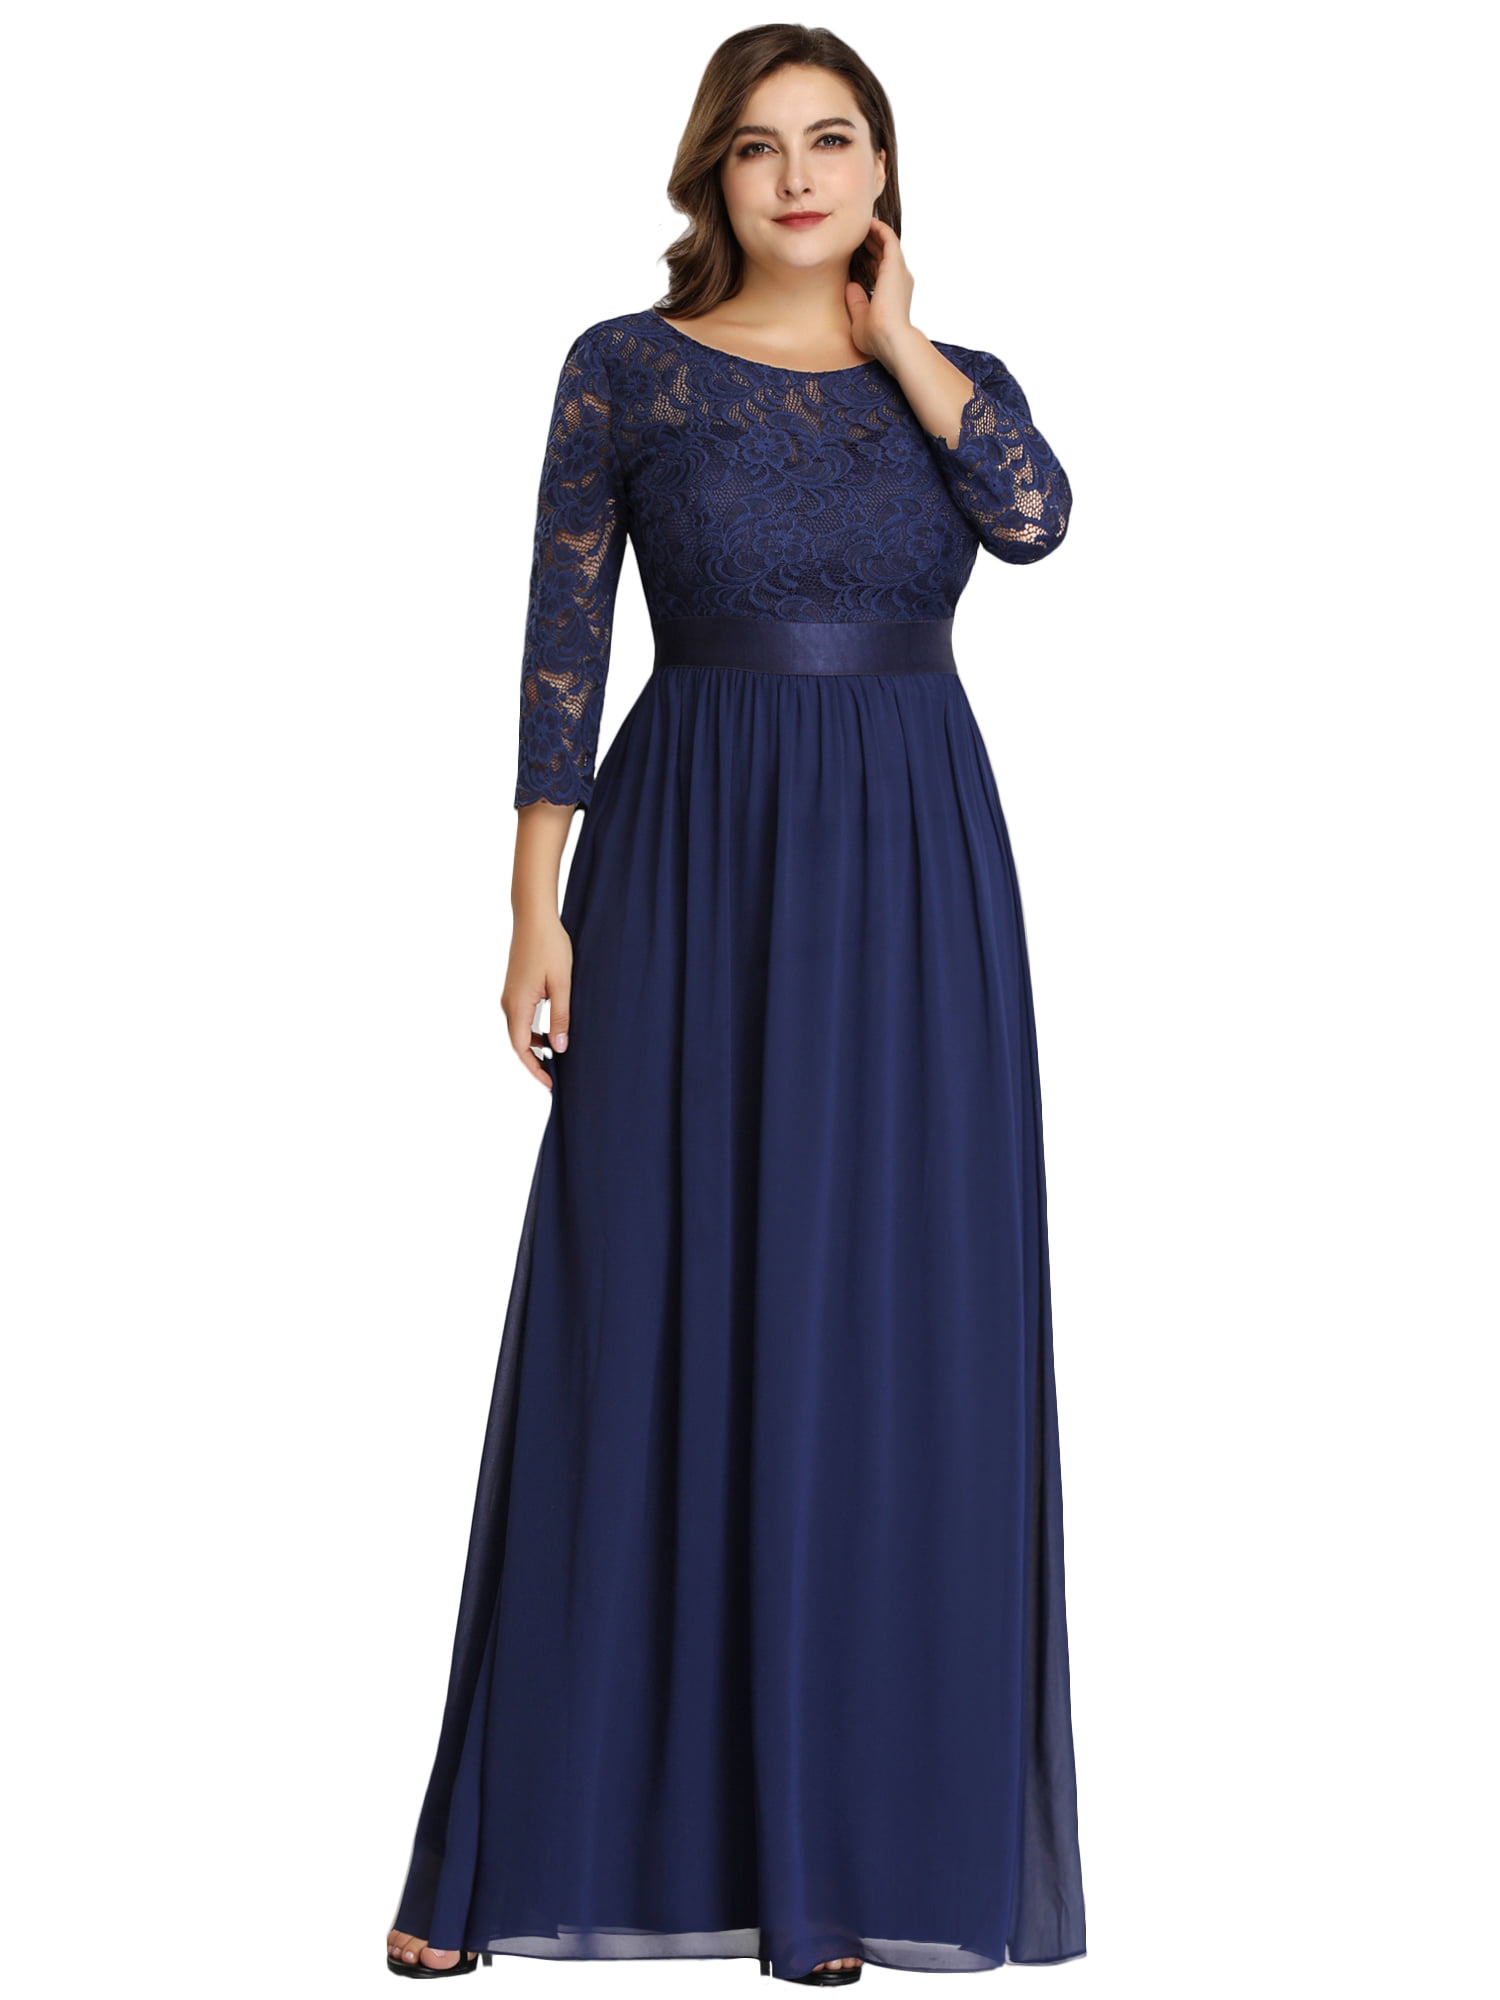 womens navy blue dress